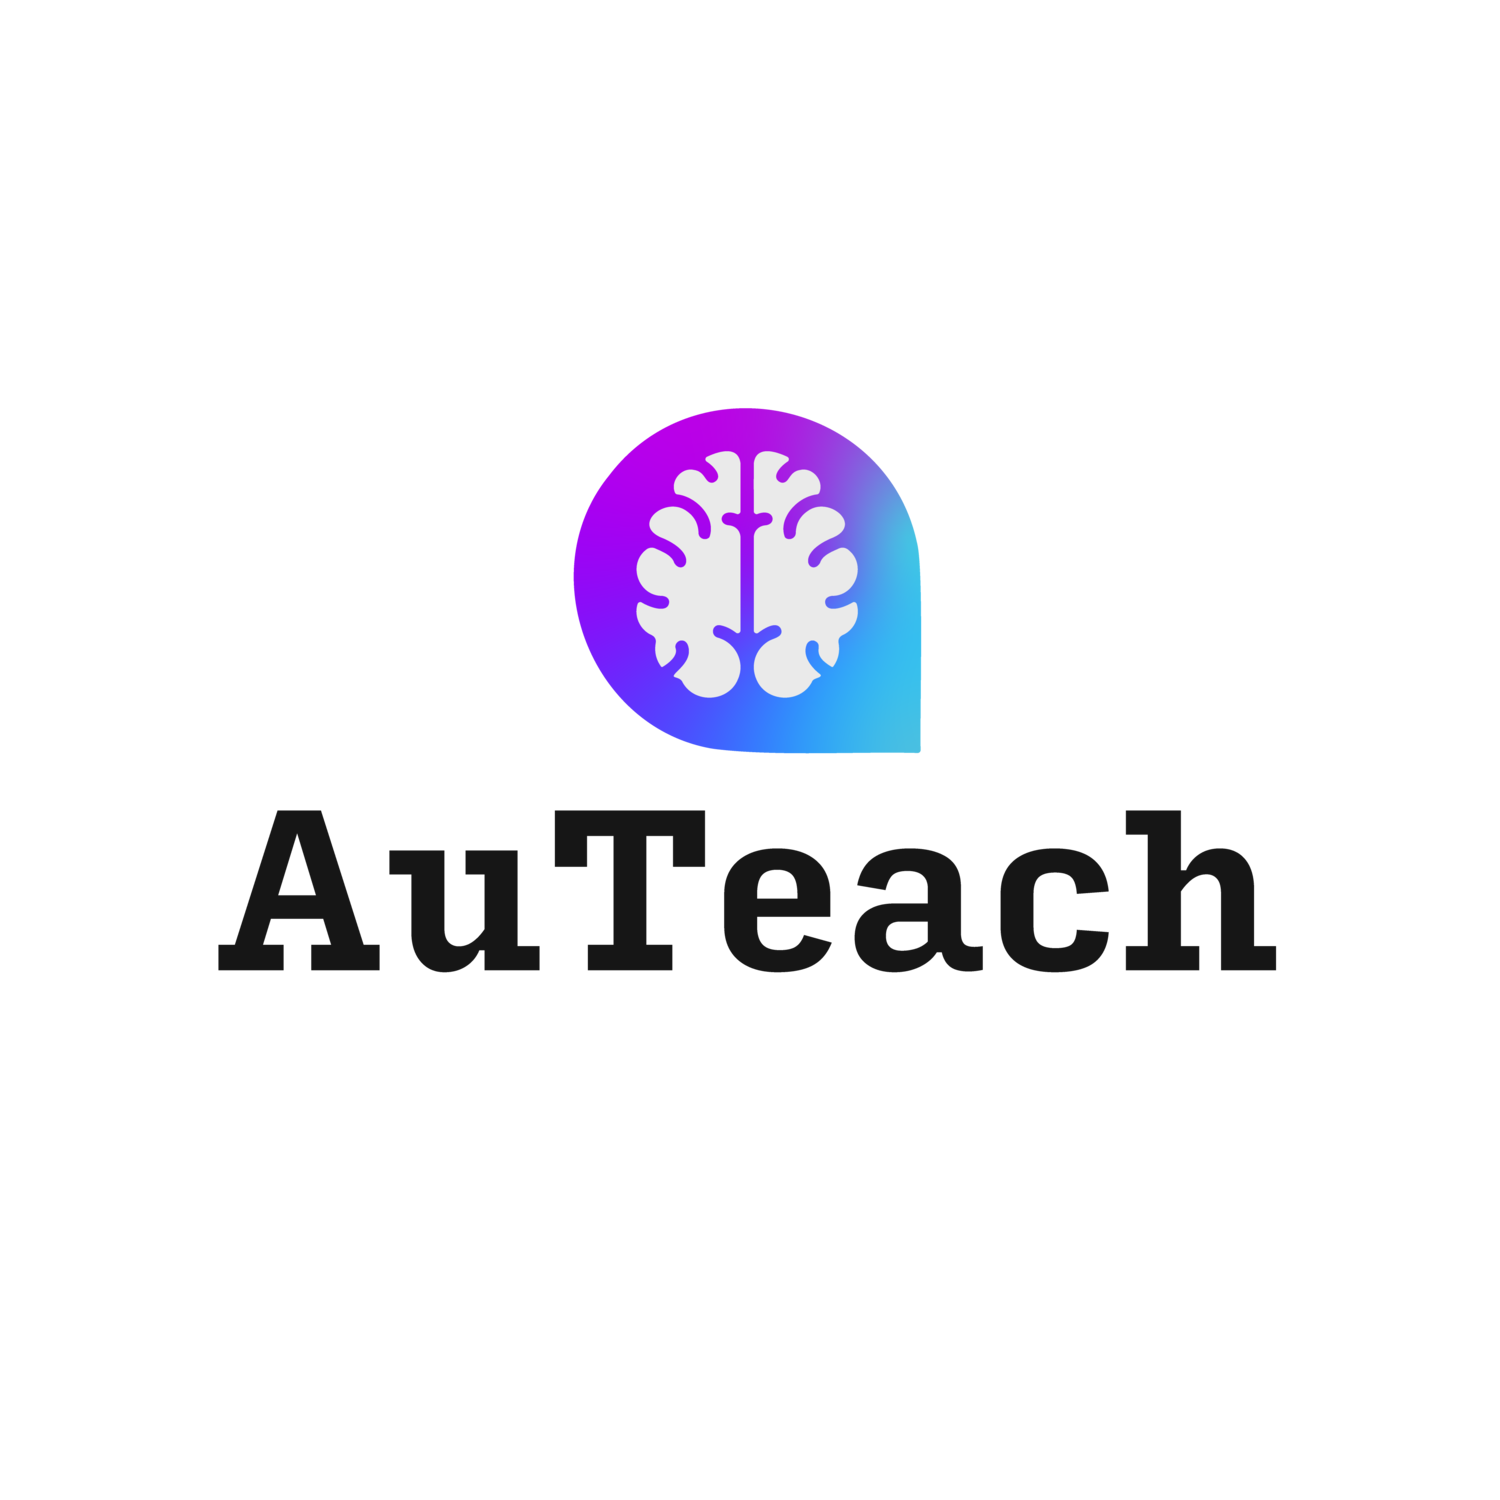 AuTeach